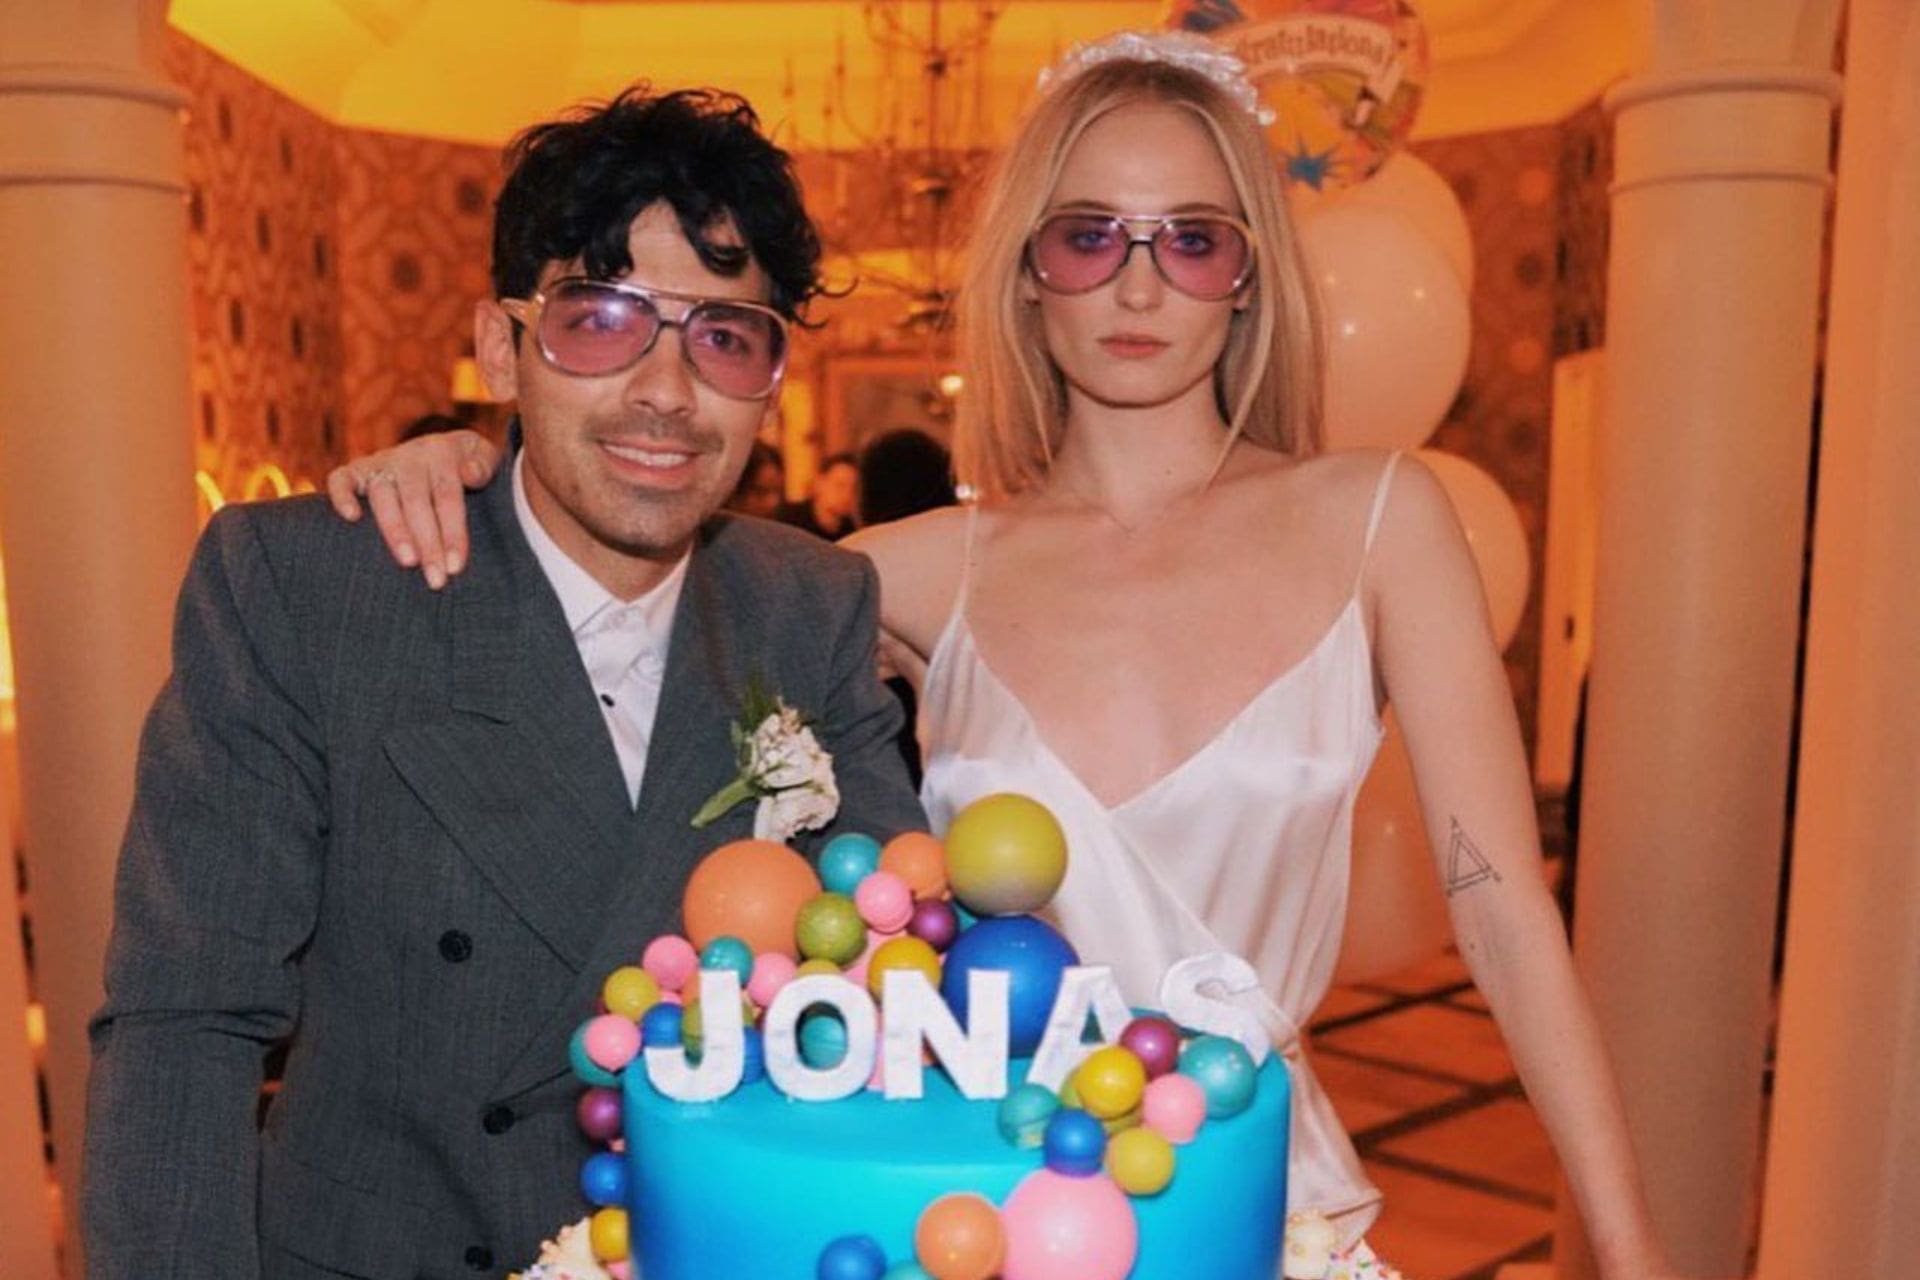 Acabou! Joe Jonas pede o divórcio a Sophie Turner